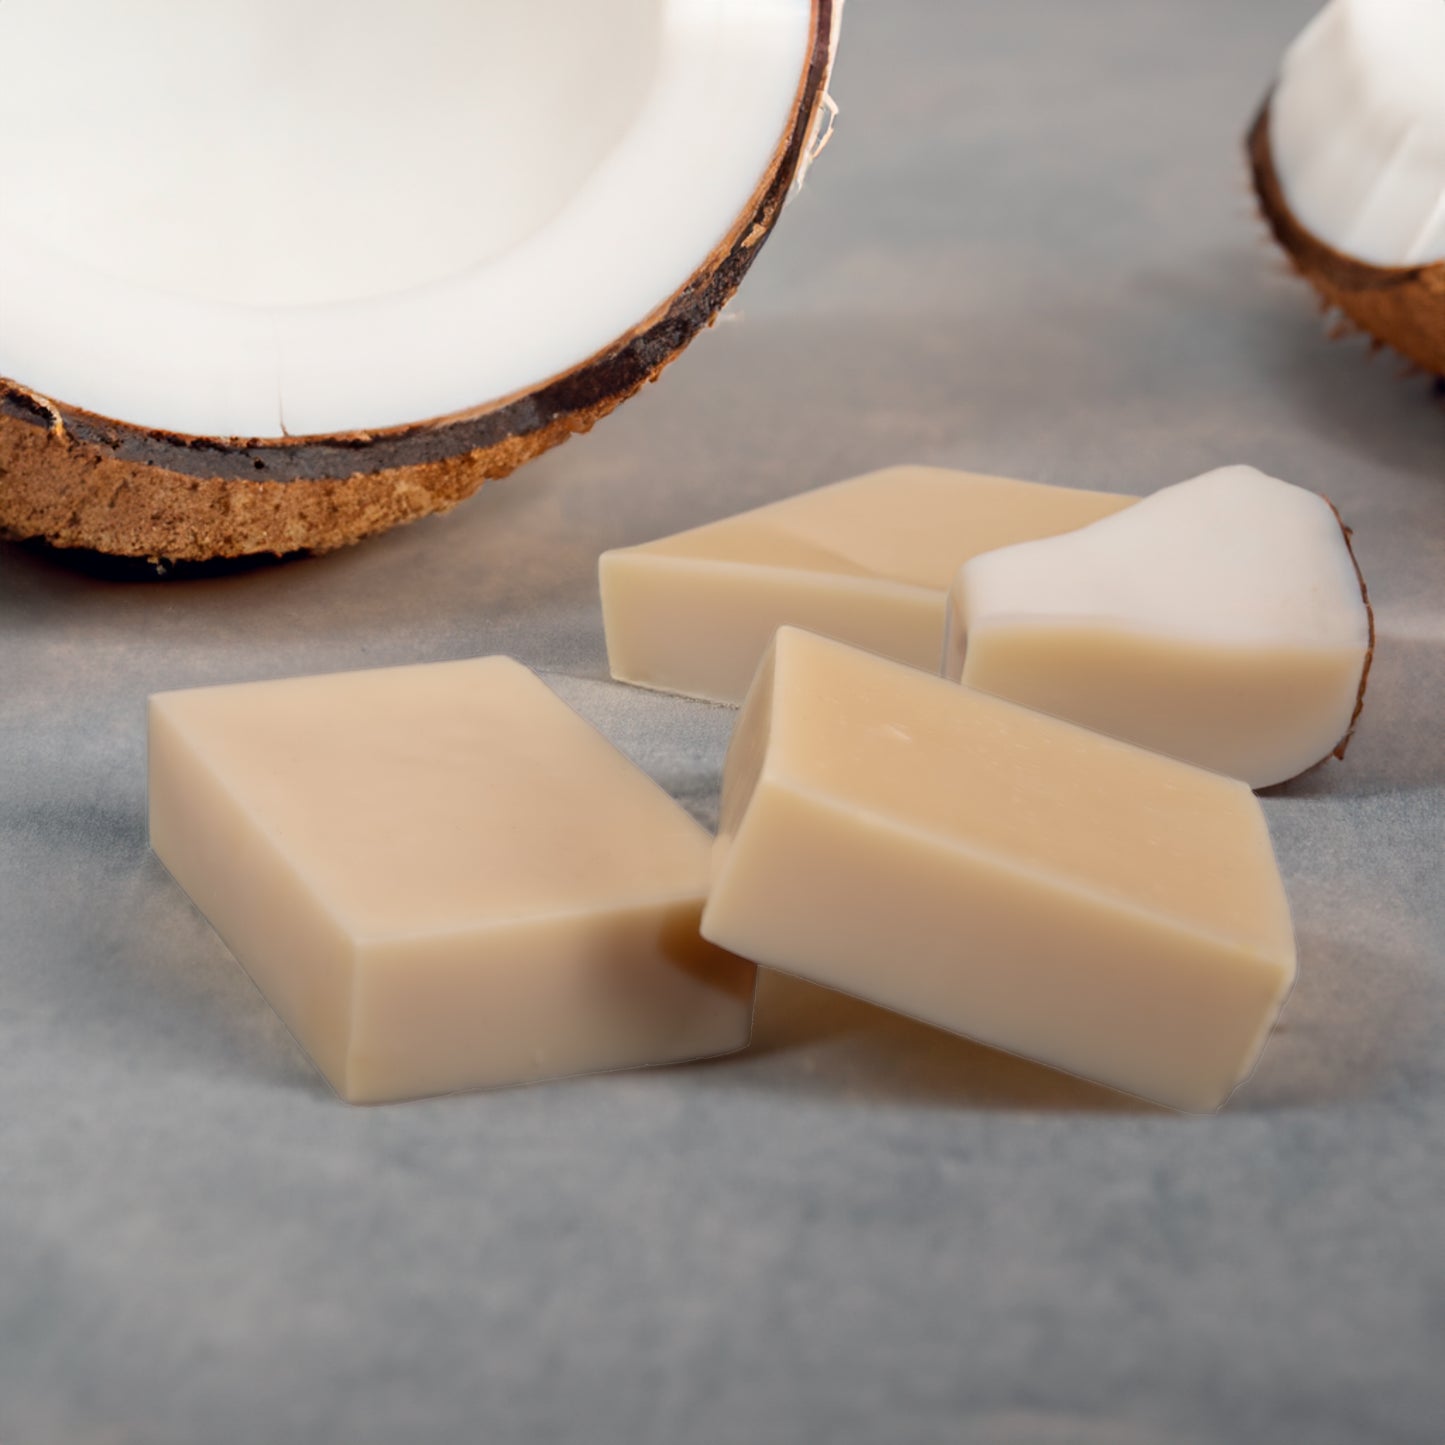 Sabonne suomalaiset käsintehdyt palasaippuat ja saippuoitu kookosöljy (Sodium Cocoate)